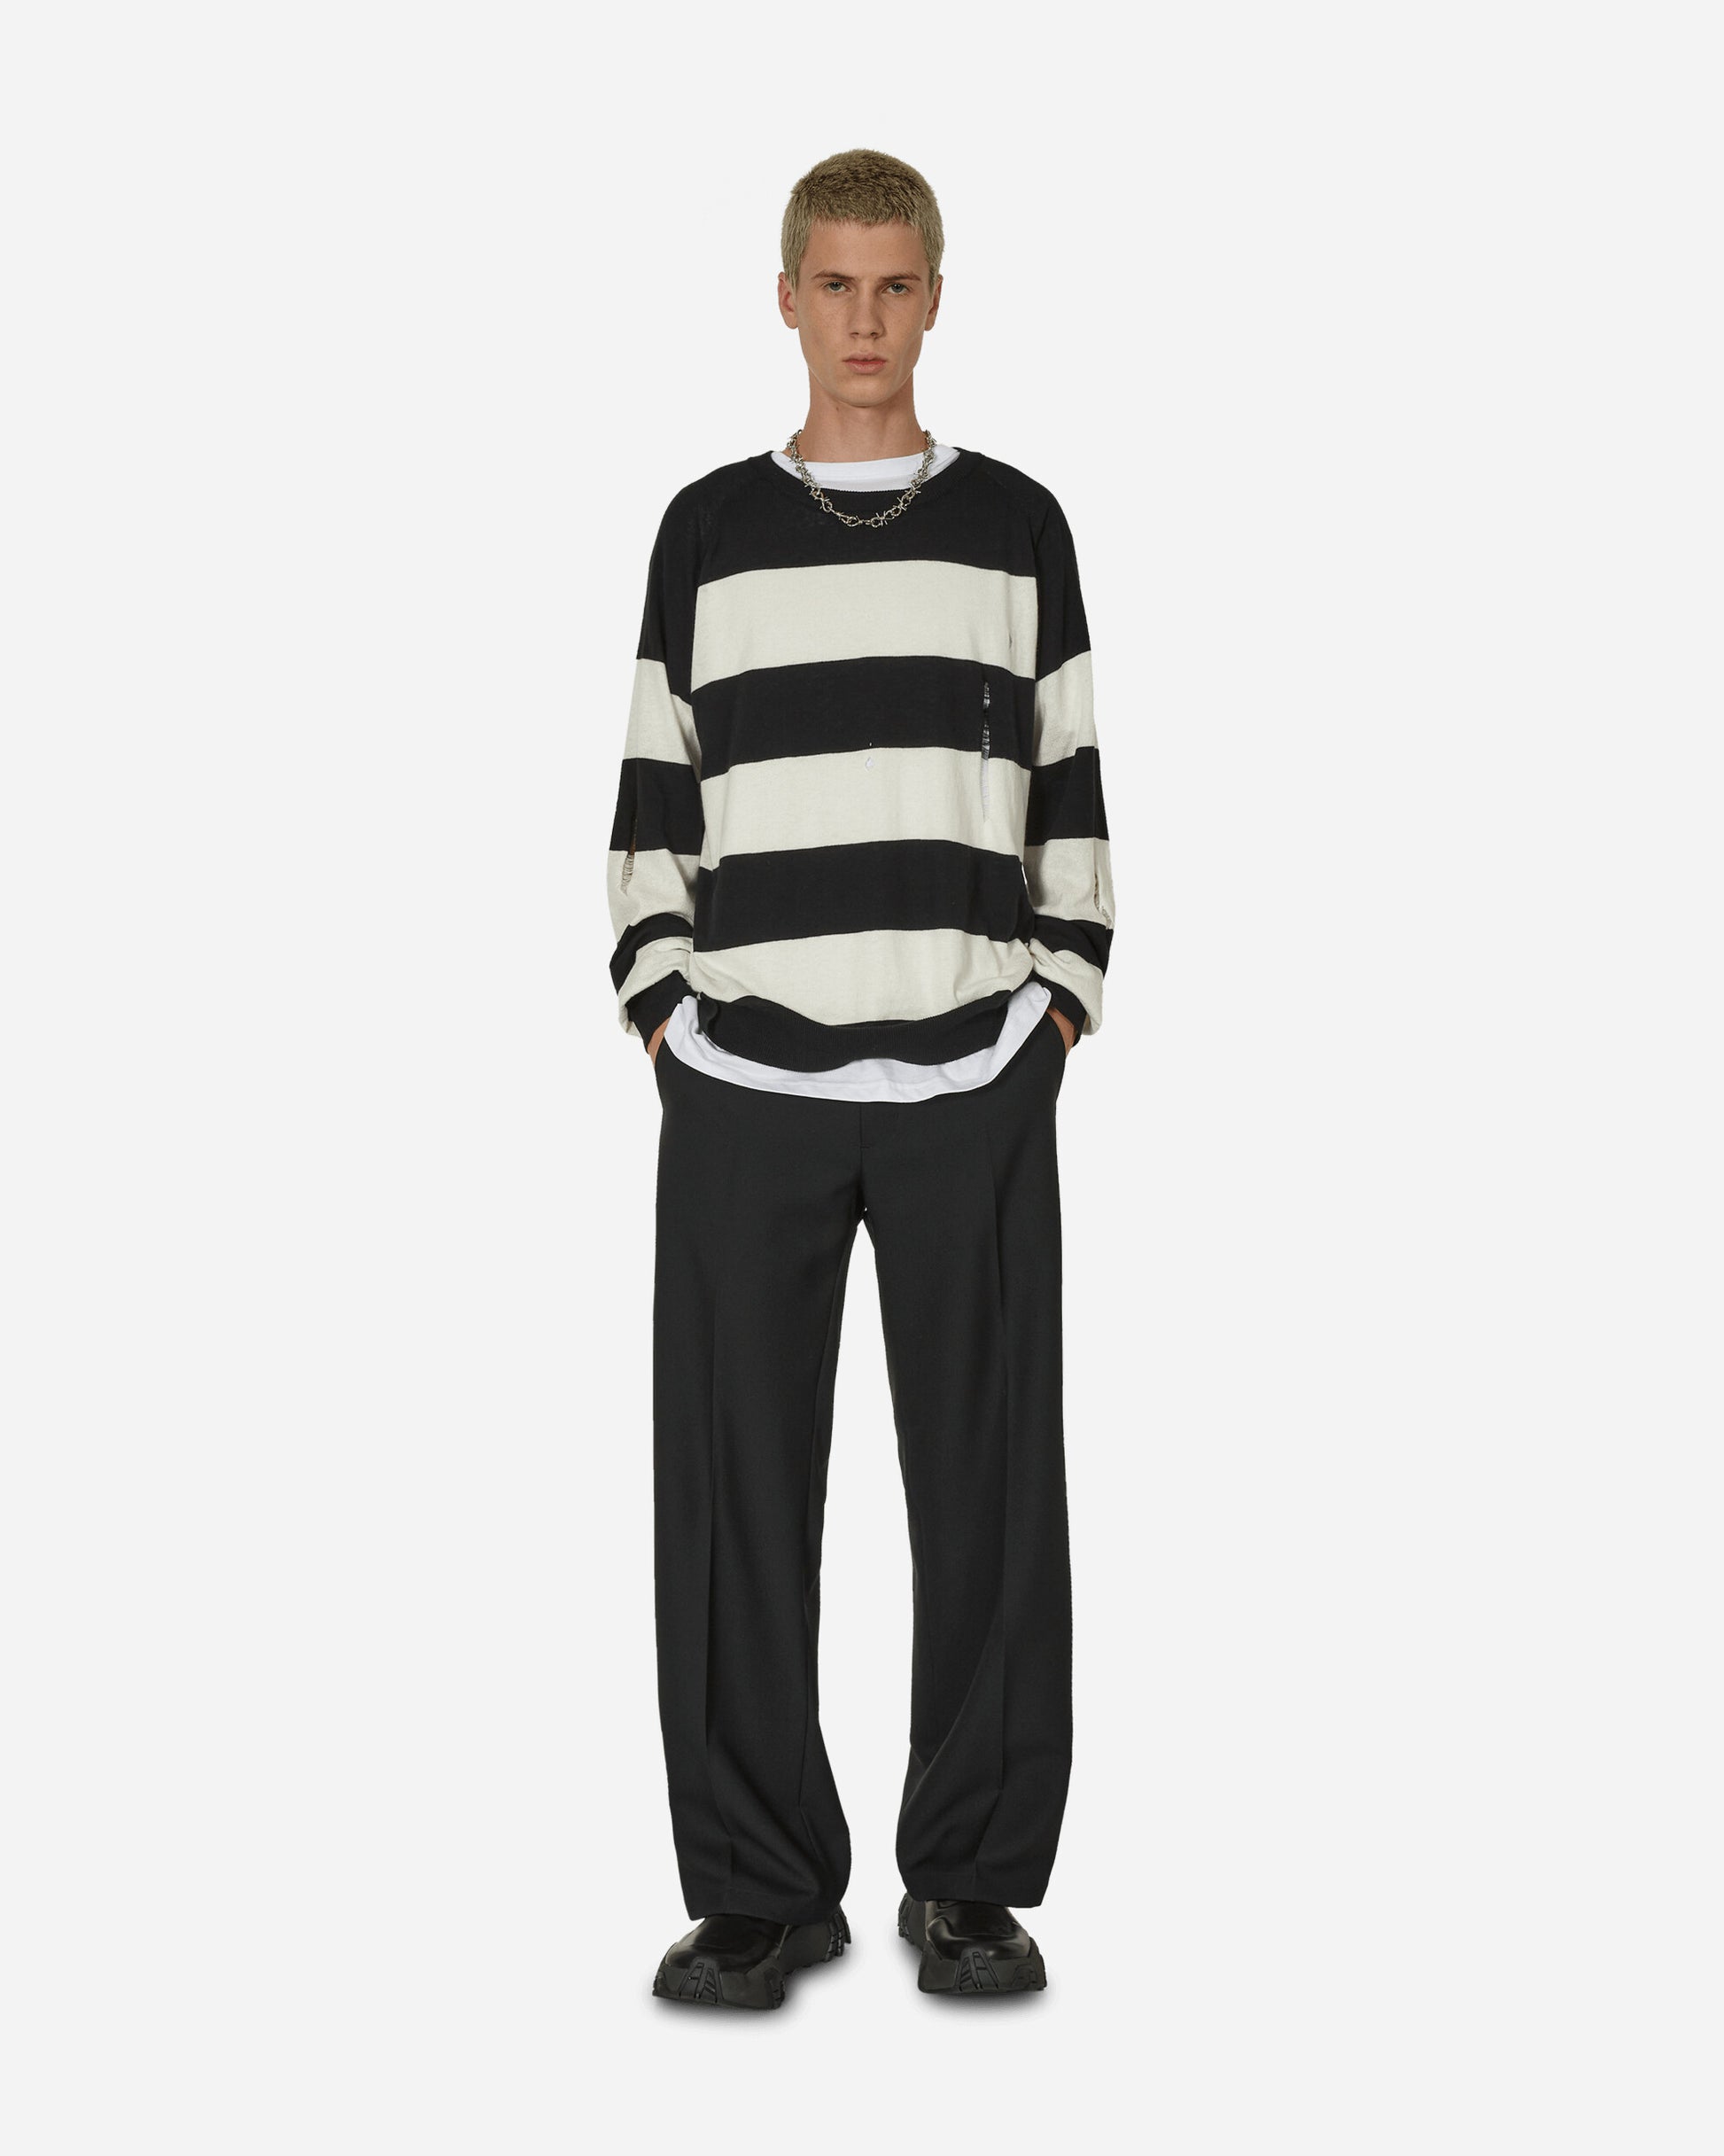 Peel & Lift Peel & Lift  X Slam Jam Damaged Stripe Jumper Black/White Knitwears Sweaters PL23-K004 002